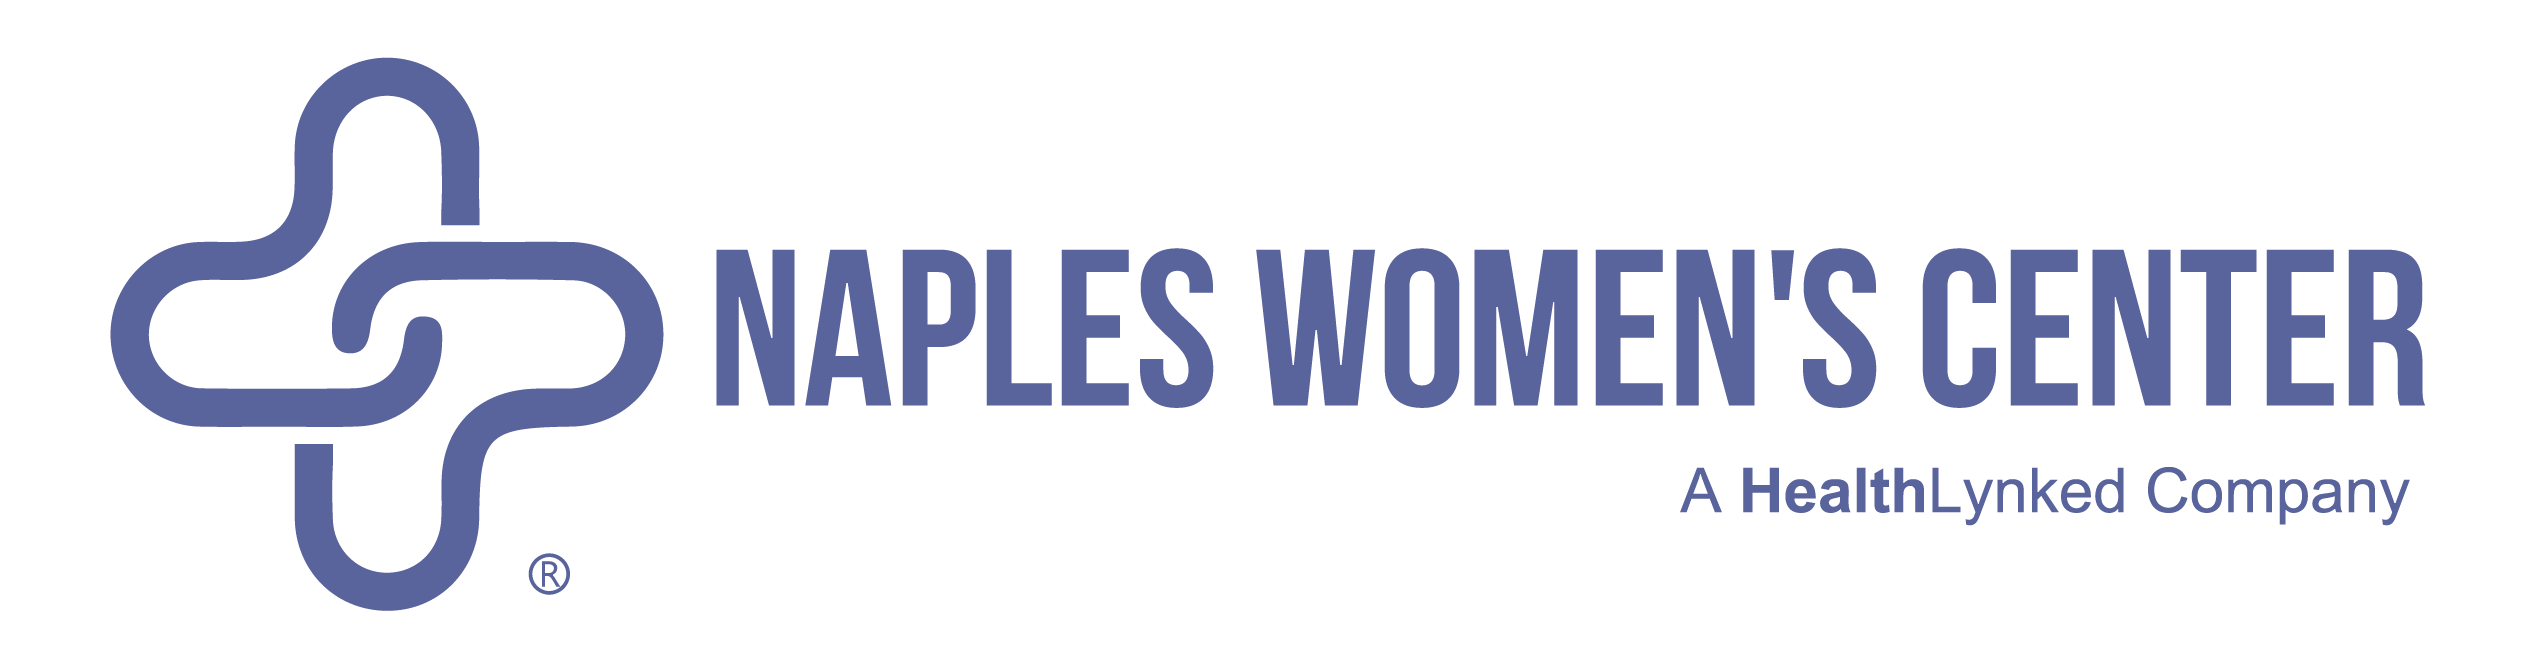 Naples women's center logo